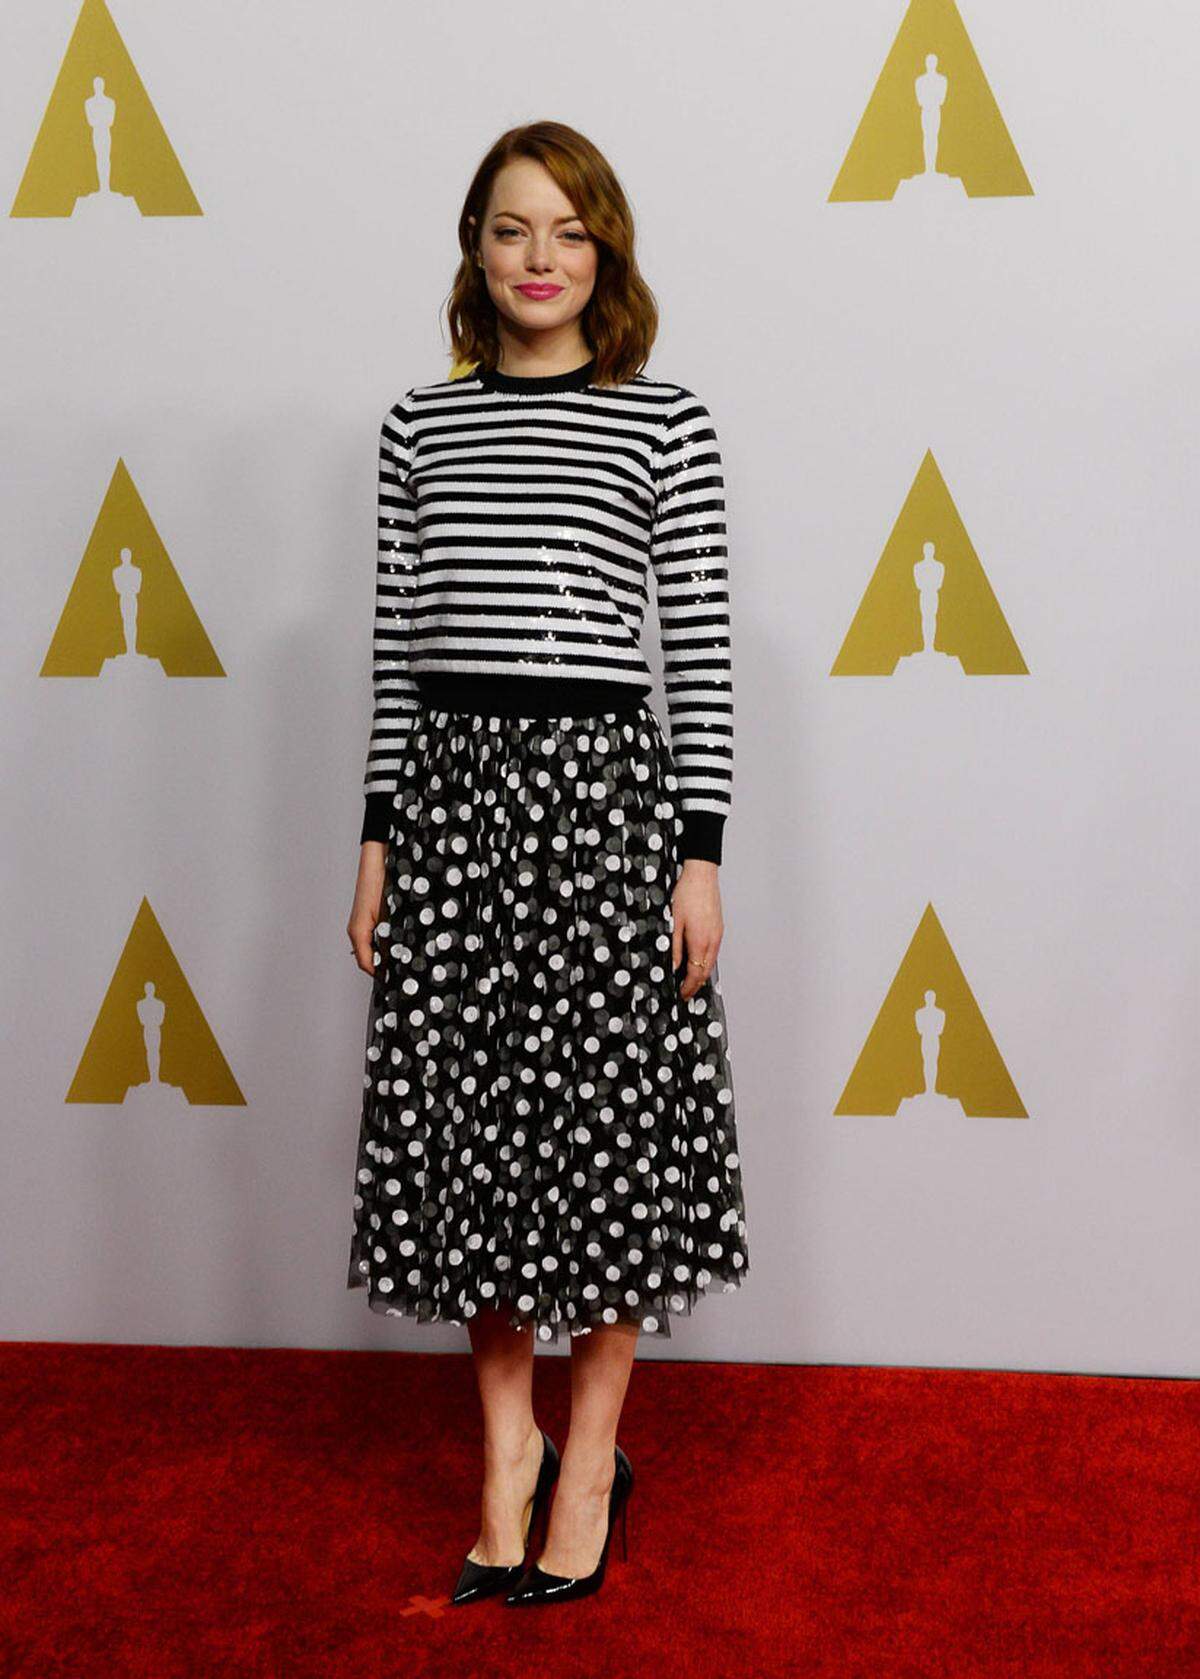 Schauspielerin Emma Stone funkelte den Fotografen in Streifen und Punkten von Michael Kors entgegen. Sie ist als beste Nebendarstellerin im Film "Birdman" nominiert.